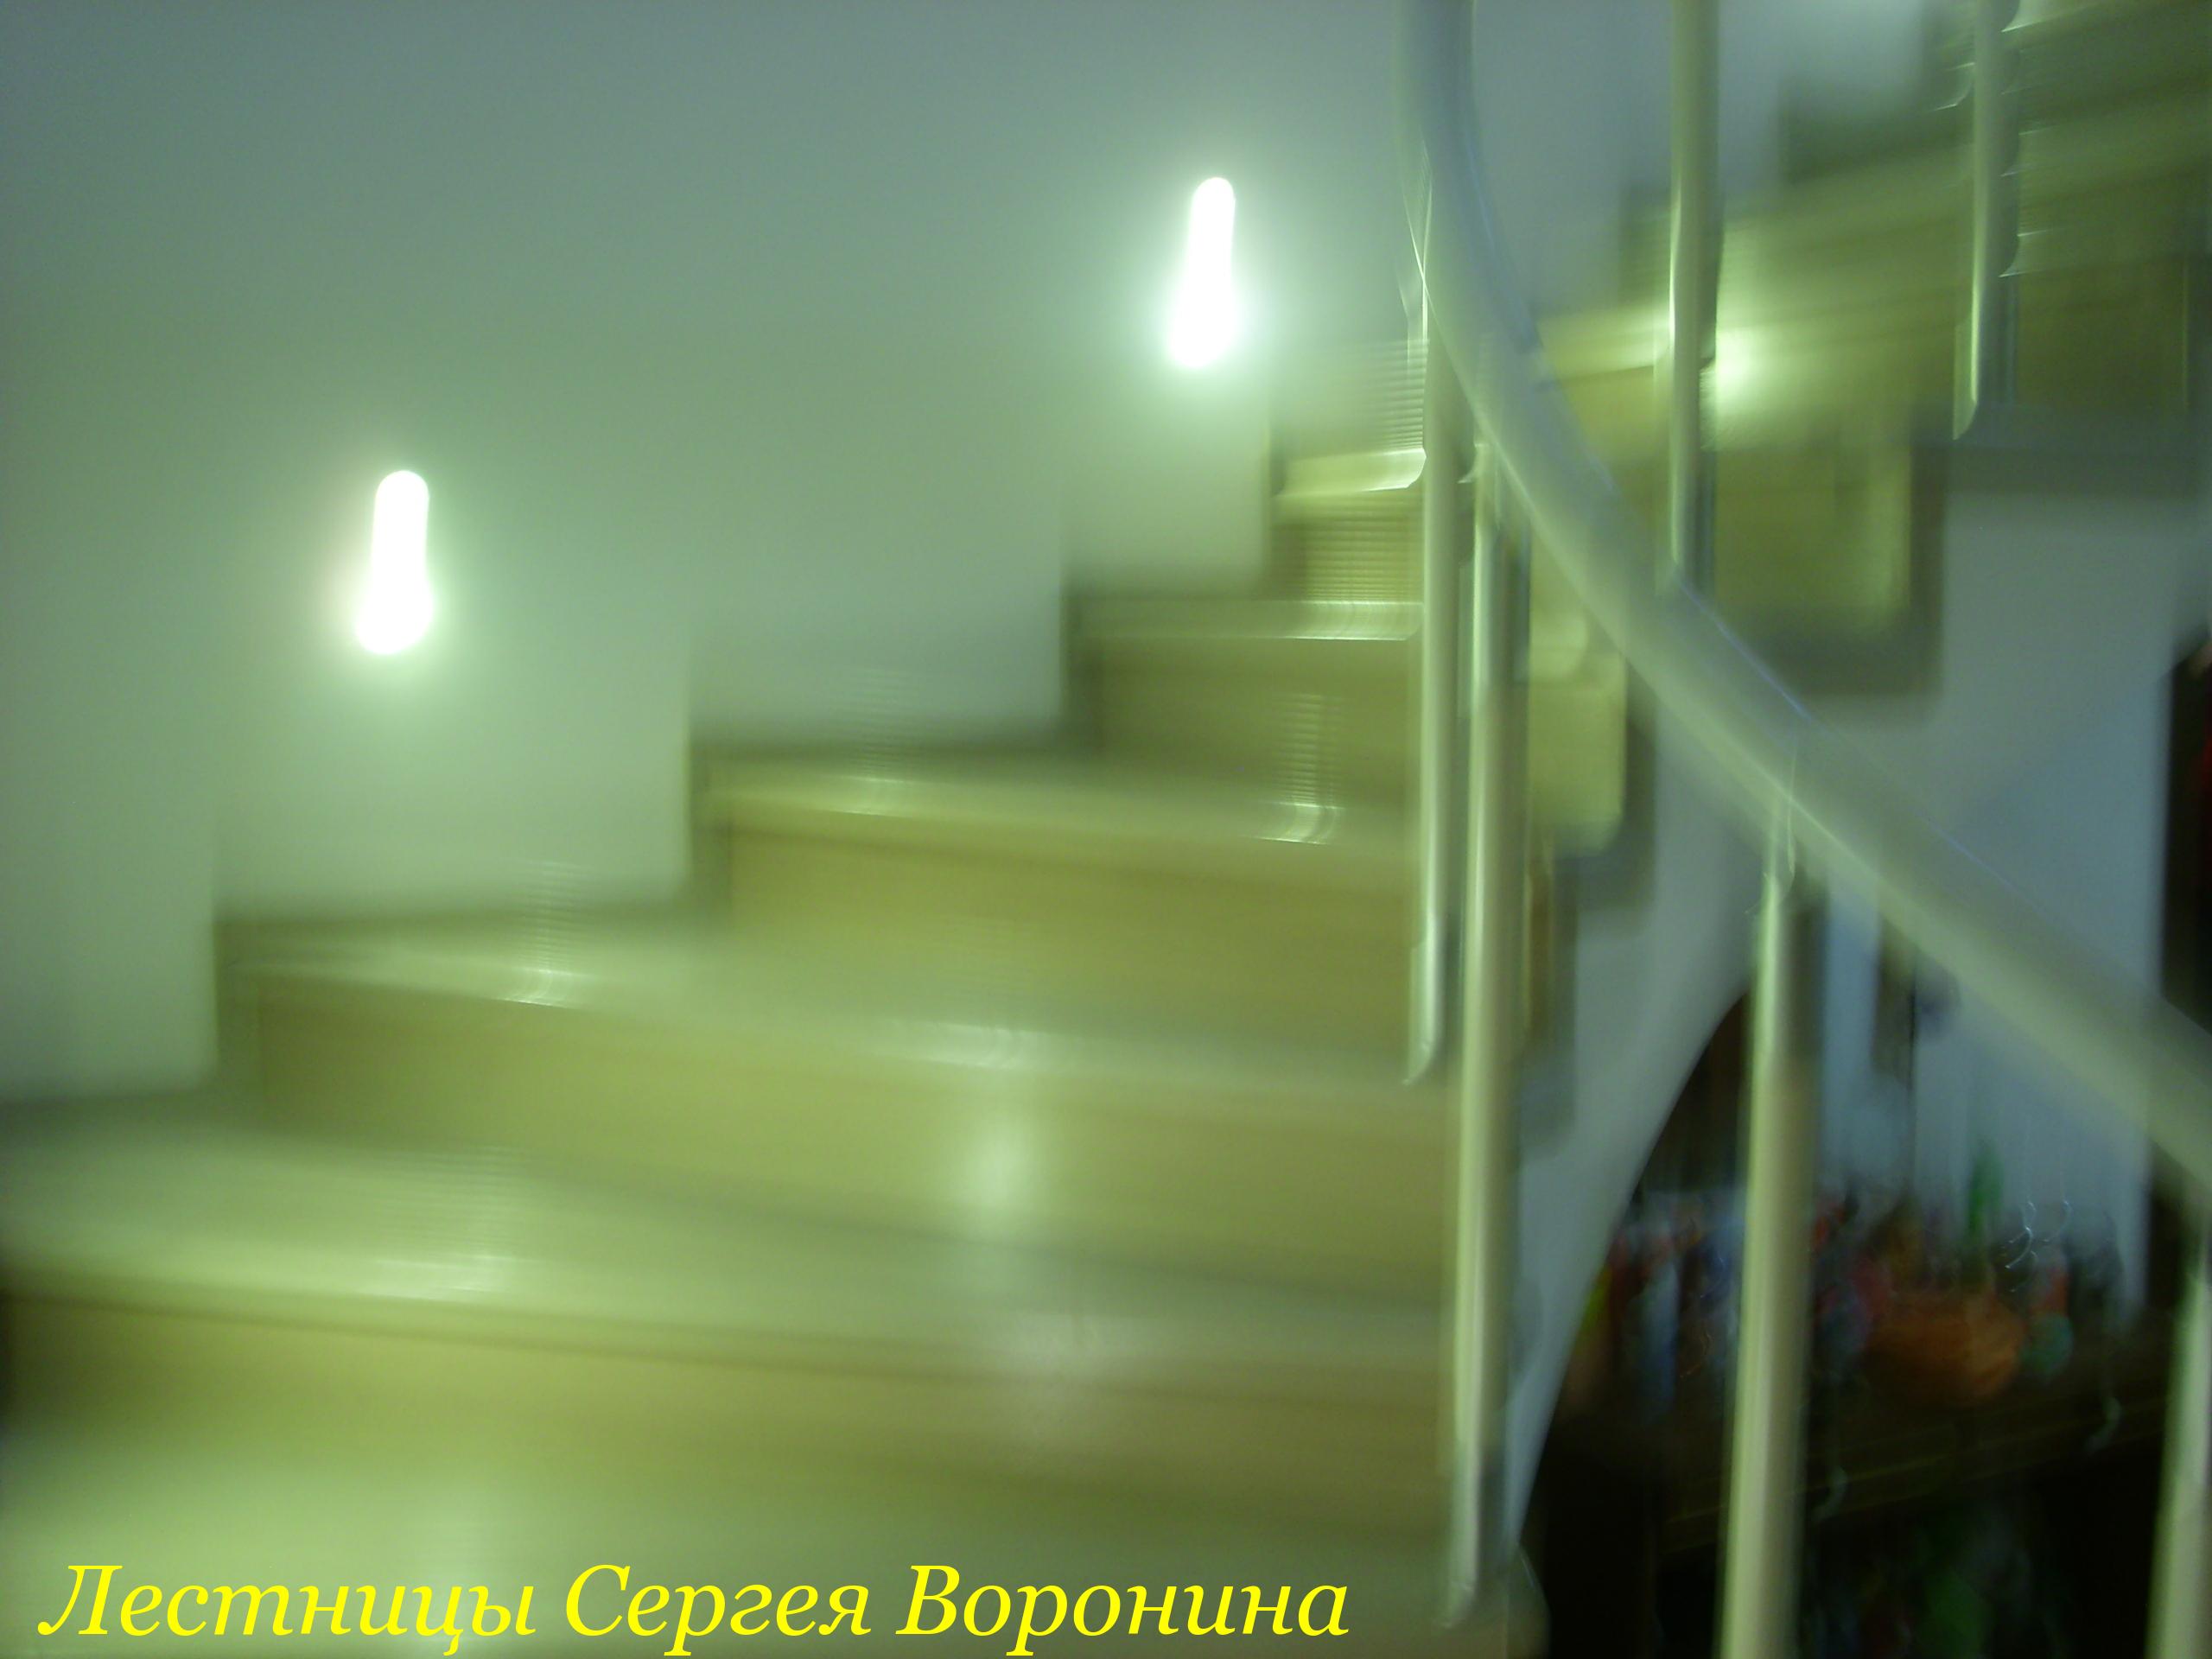 Межэтажные Лестницы Сергея Воронина, Воронеж - 1 Минск